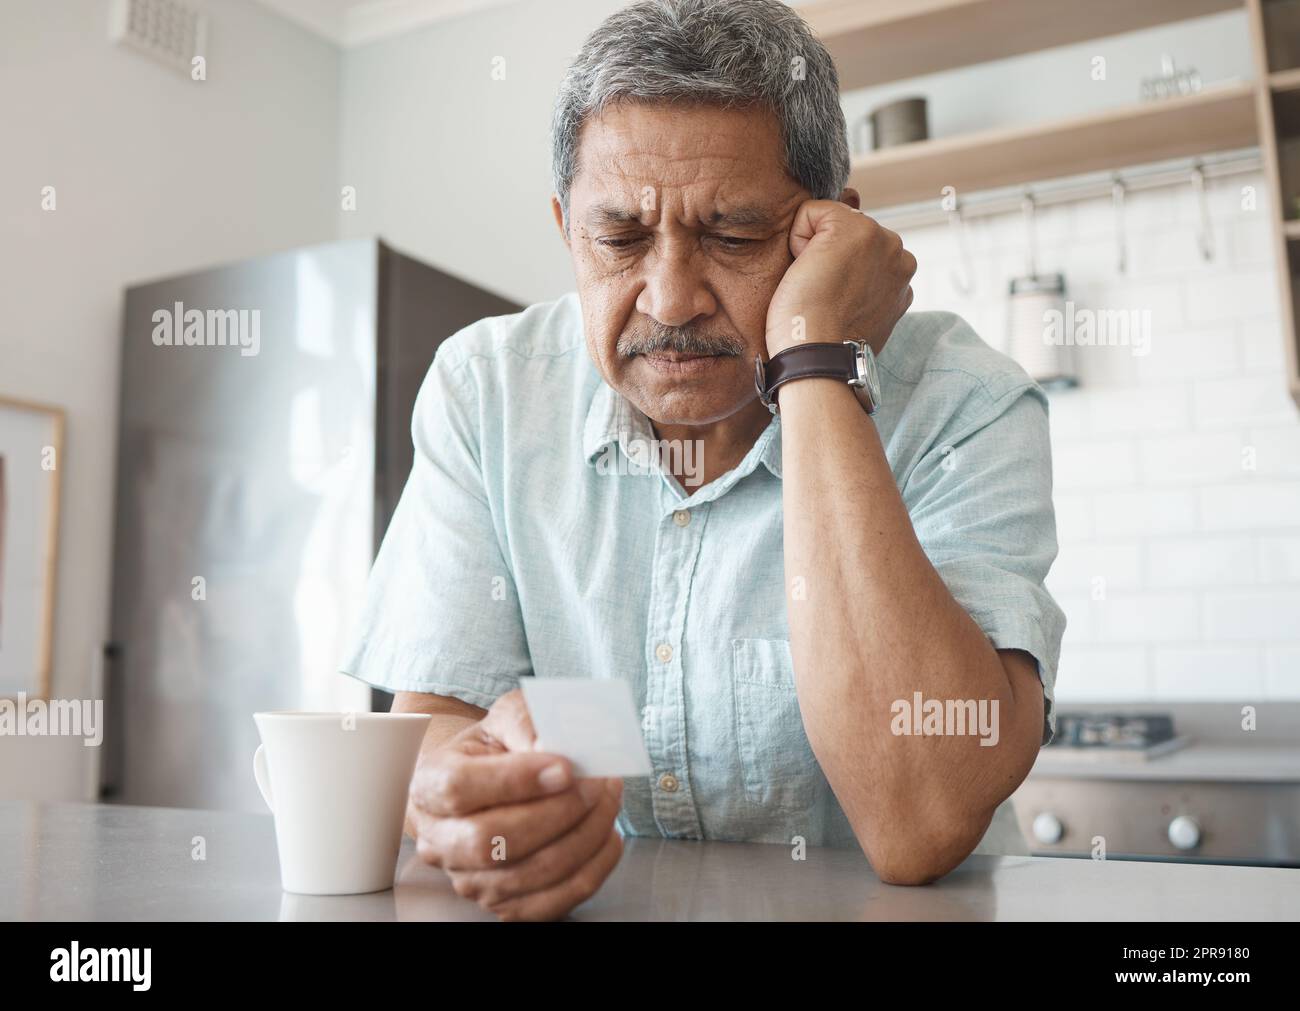 Es wird mit der Zeit besser. Ein älterer Mann, der unglücklich aussieht, während er zu Hause ein Foto ansieht. Stockfoto